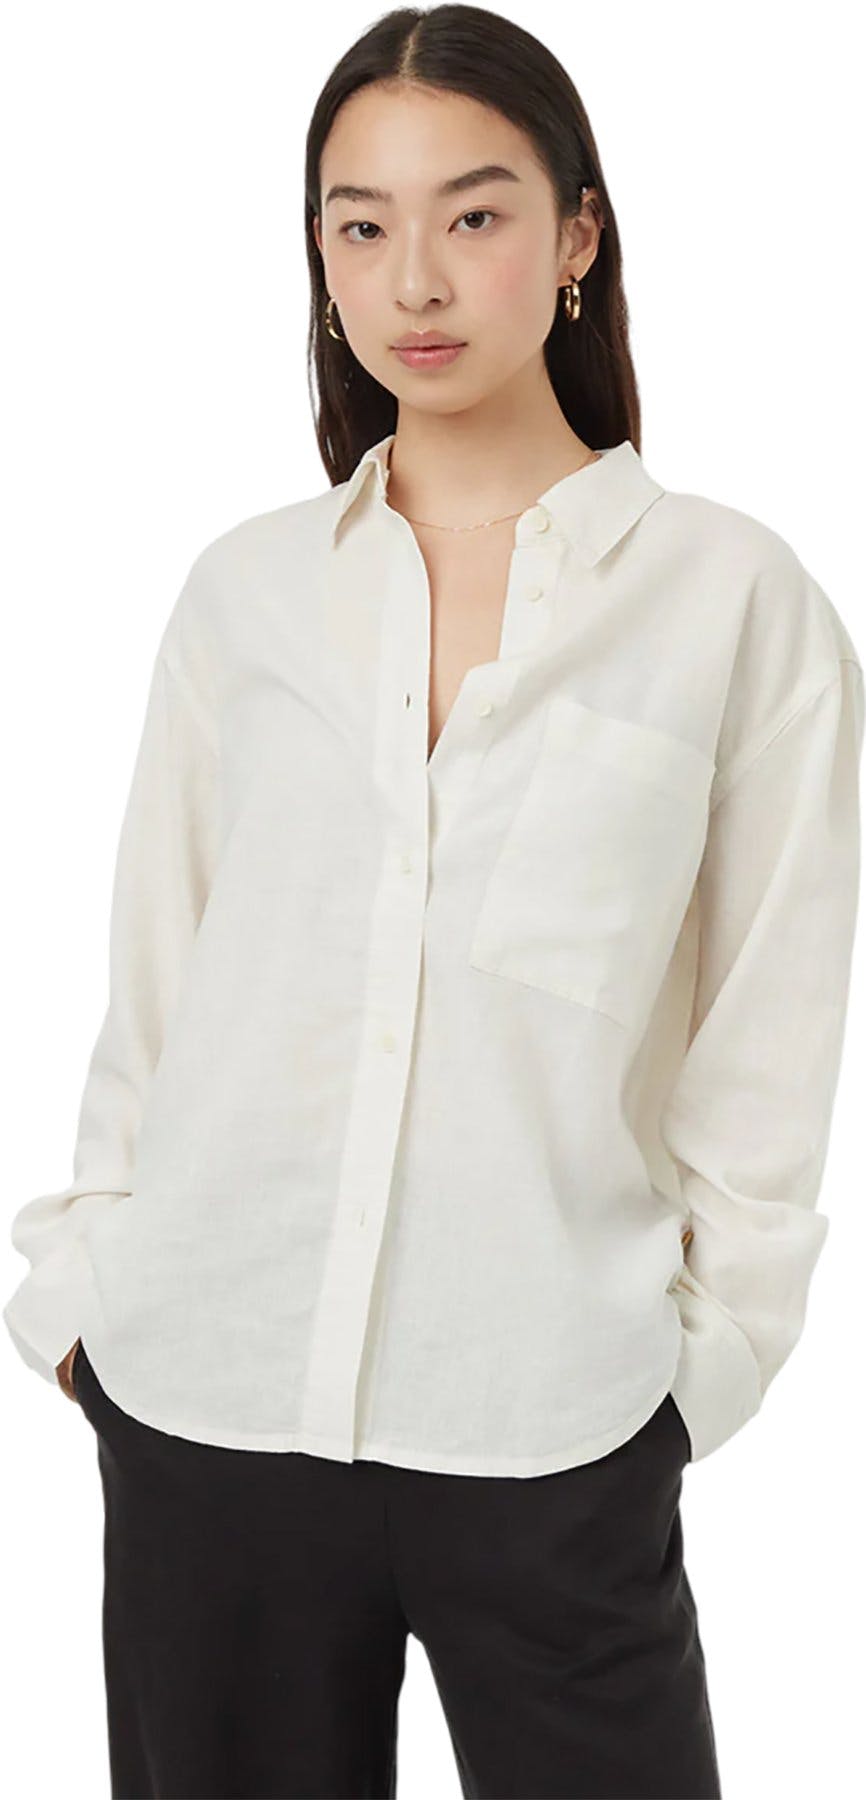 Image de produit pour Chemise boutonnée en chanvre sur le devant - Femme